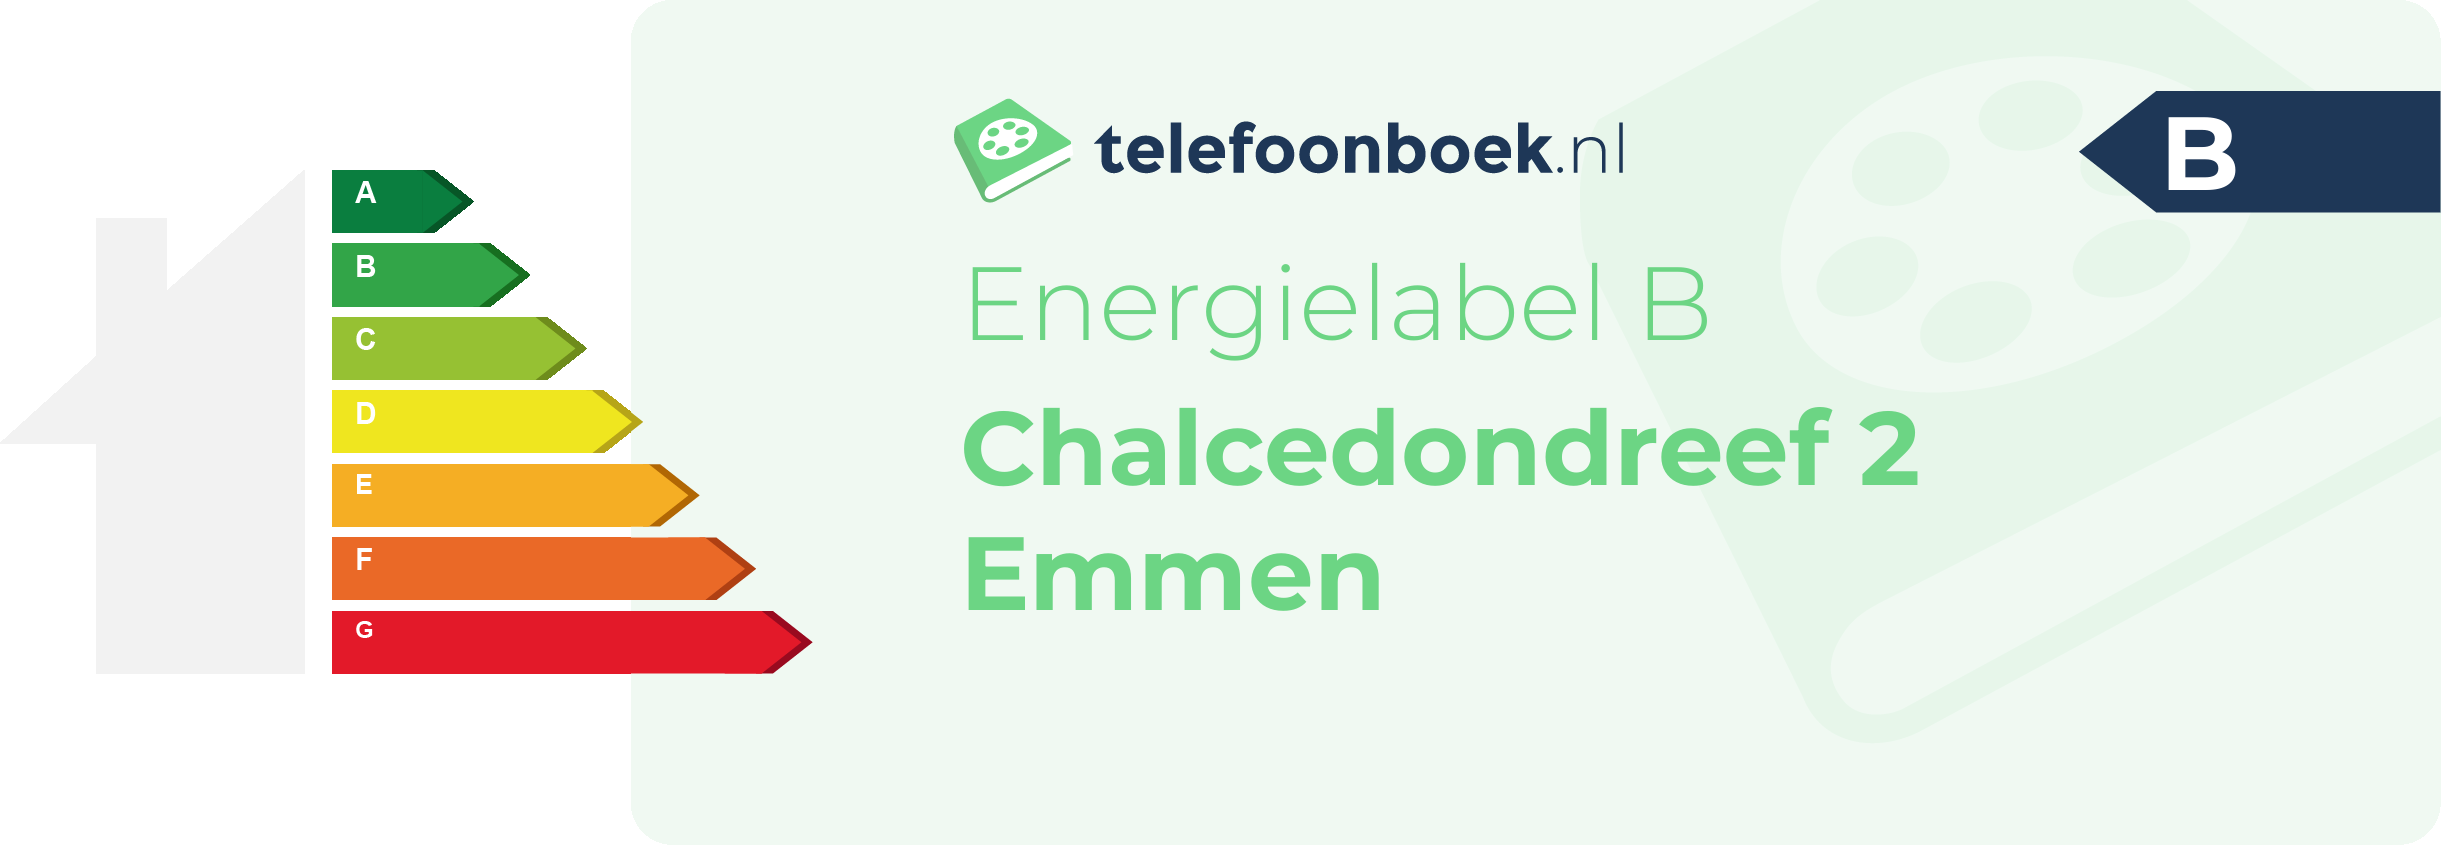 Energielabel Chalcedondreef 2 Emmen